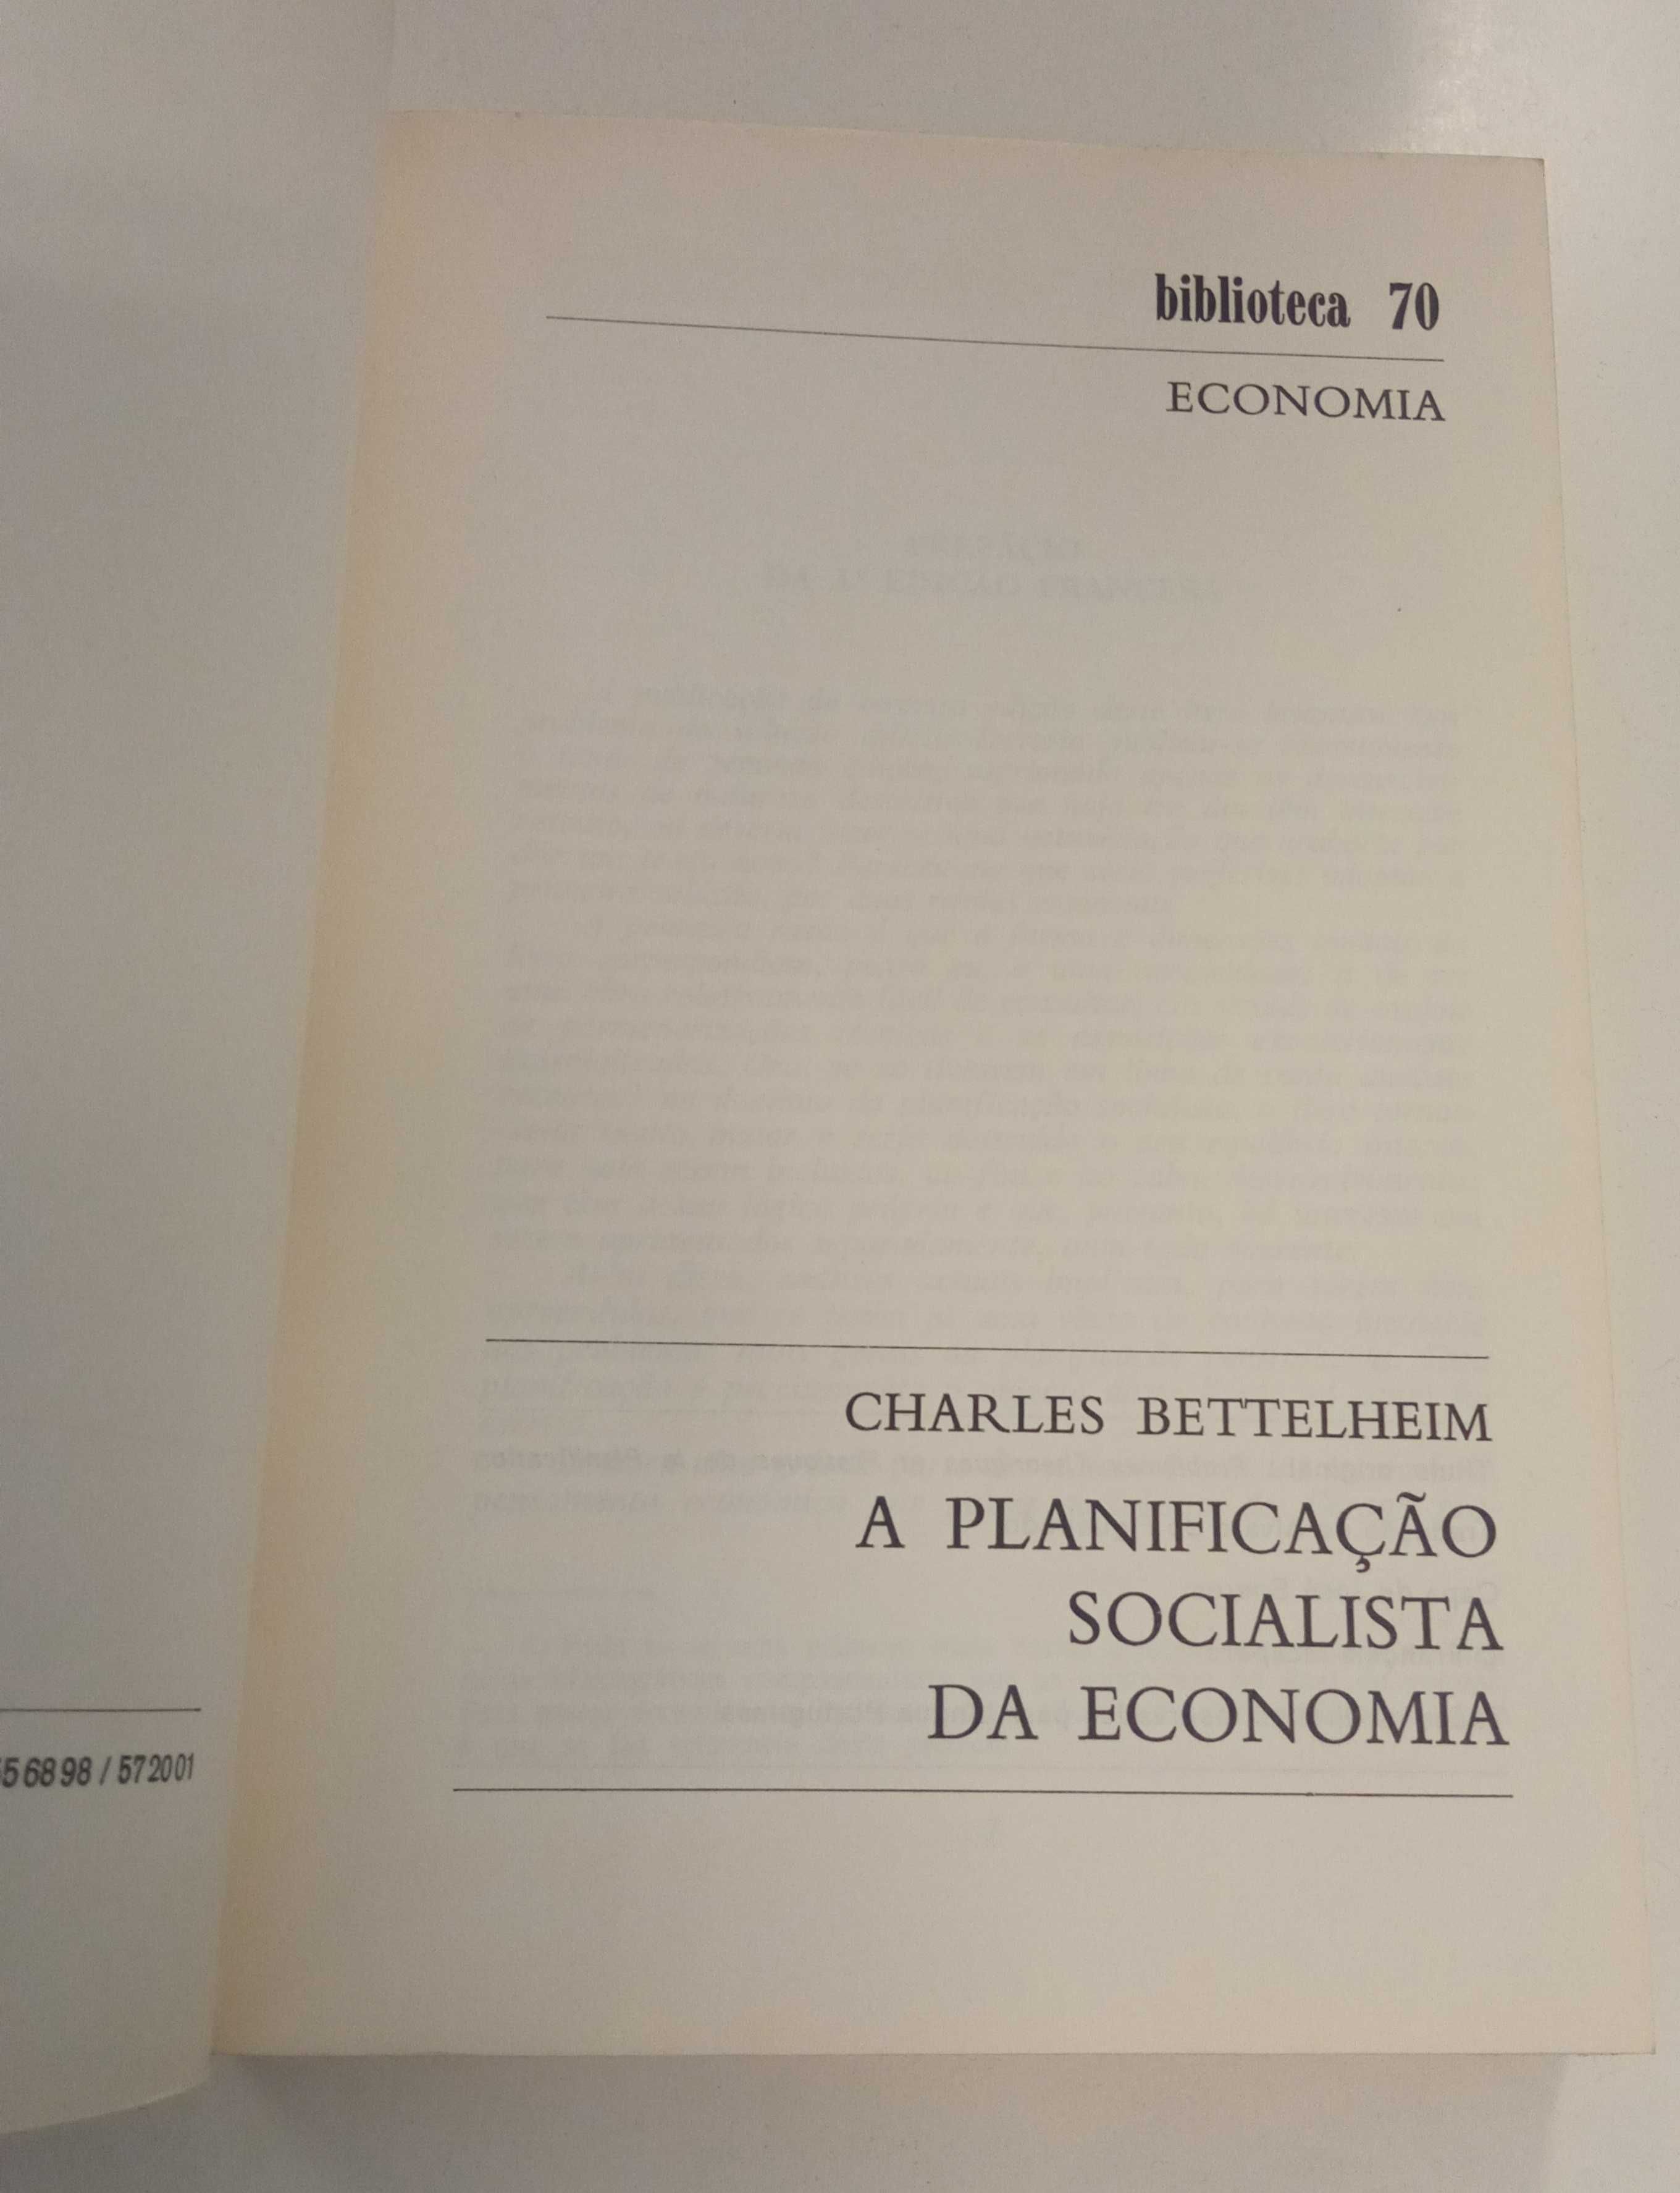 A planificação socialista da economia, de Charles Bettelheim